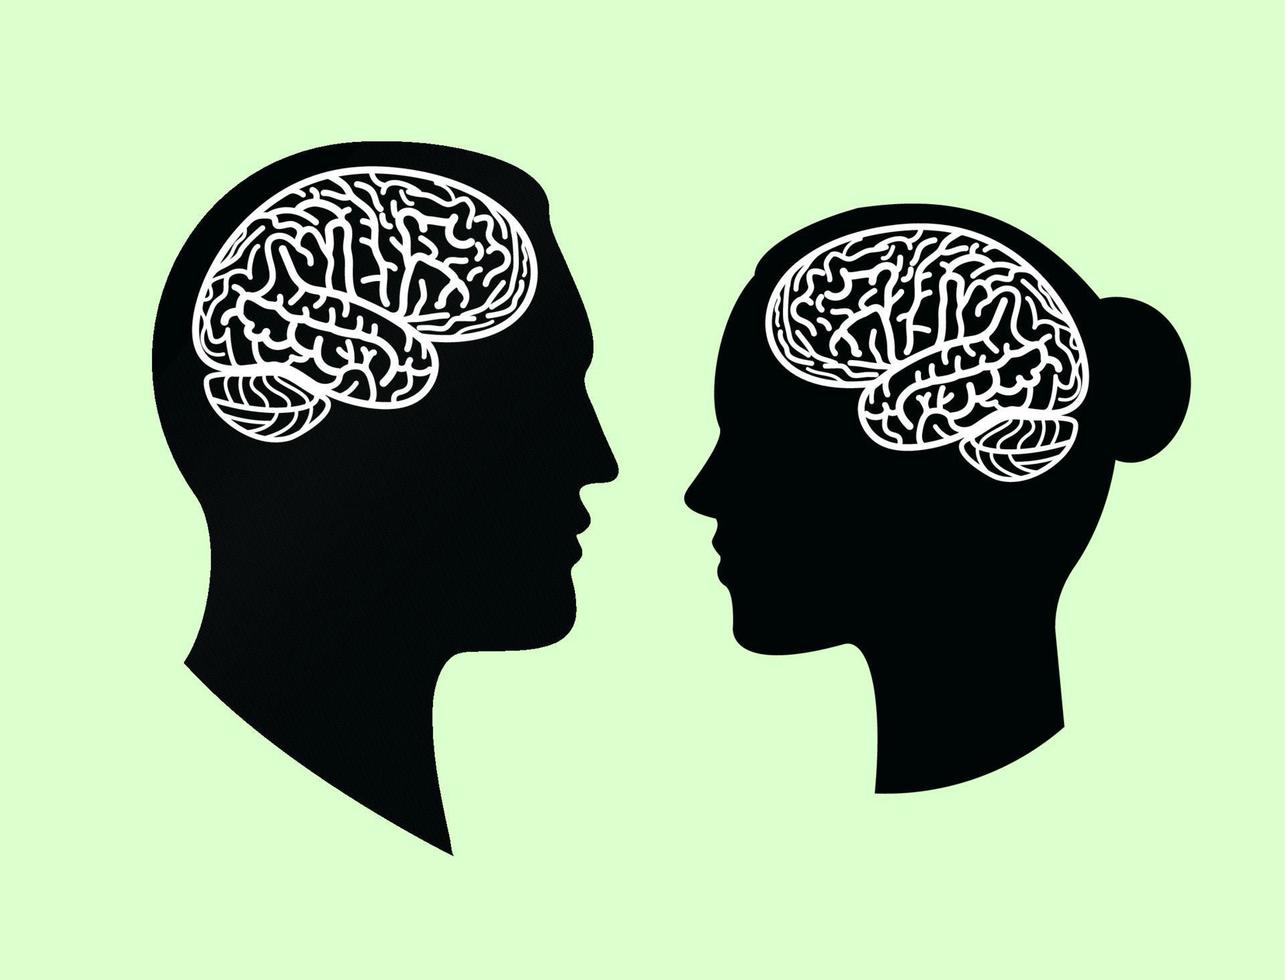 circunvoluções cerebrais em silhueta de cabeça humana negra masculina e feminina, ilustração vetorial plana. vetor